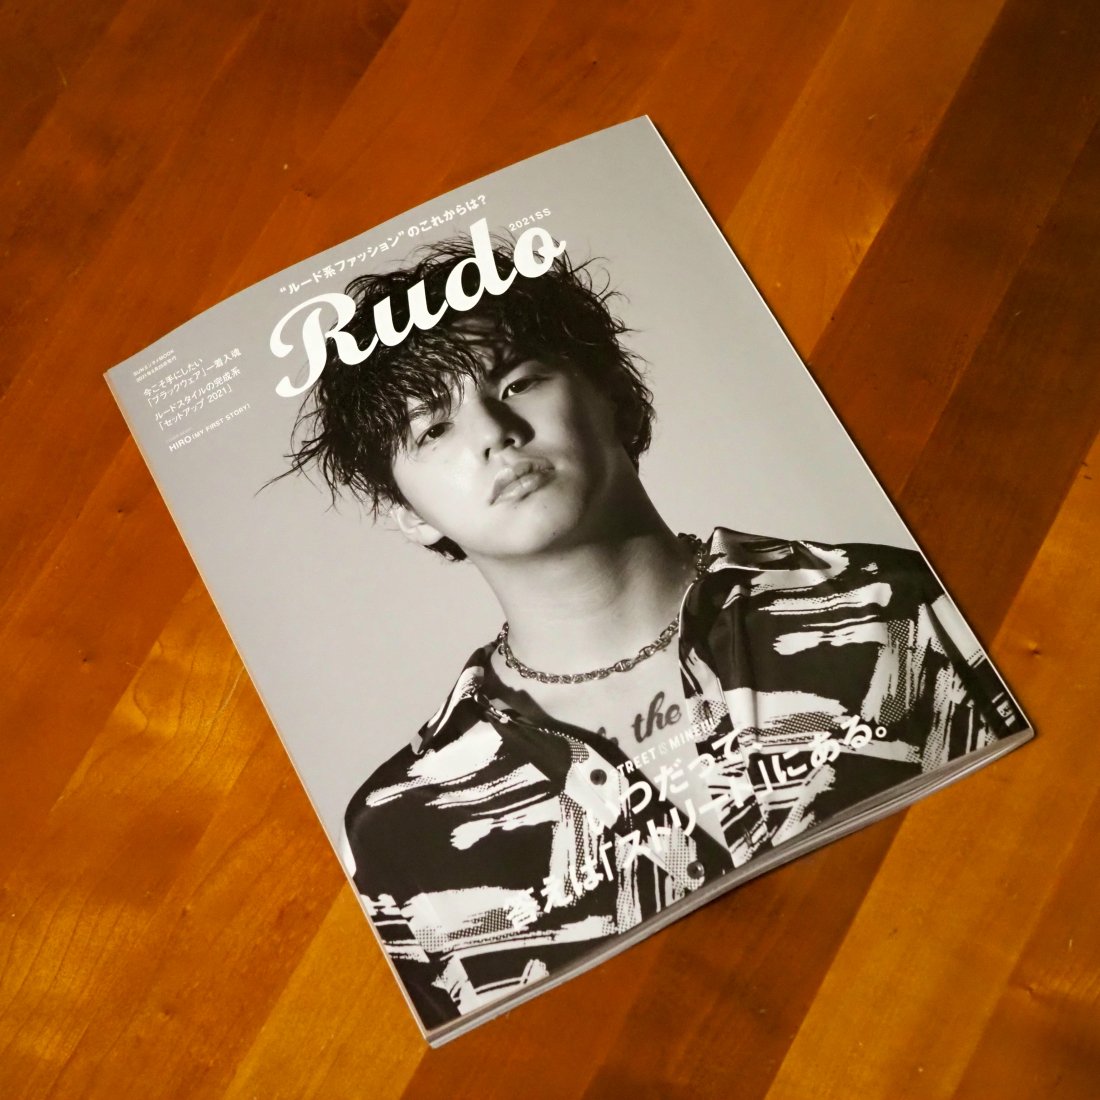 My First Story Hiroさんが表紙の04月13日発売のファッション雑誌 Rudo 21ss 春夏ファッション特集号に 7senseの商品が119ページに掲載されております 7sense